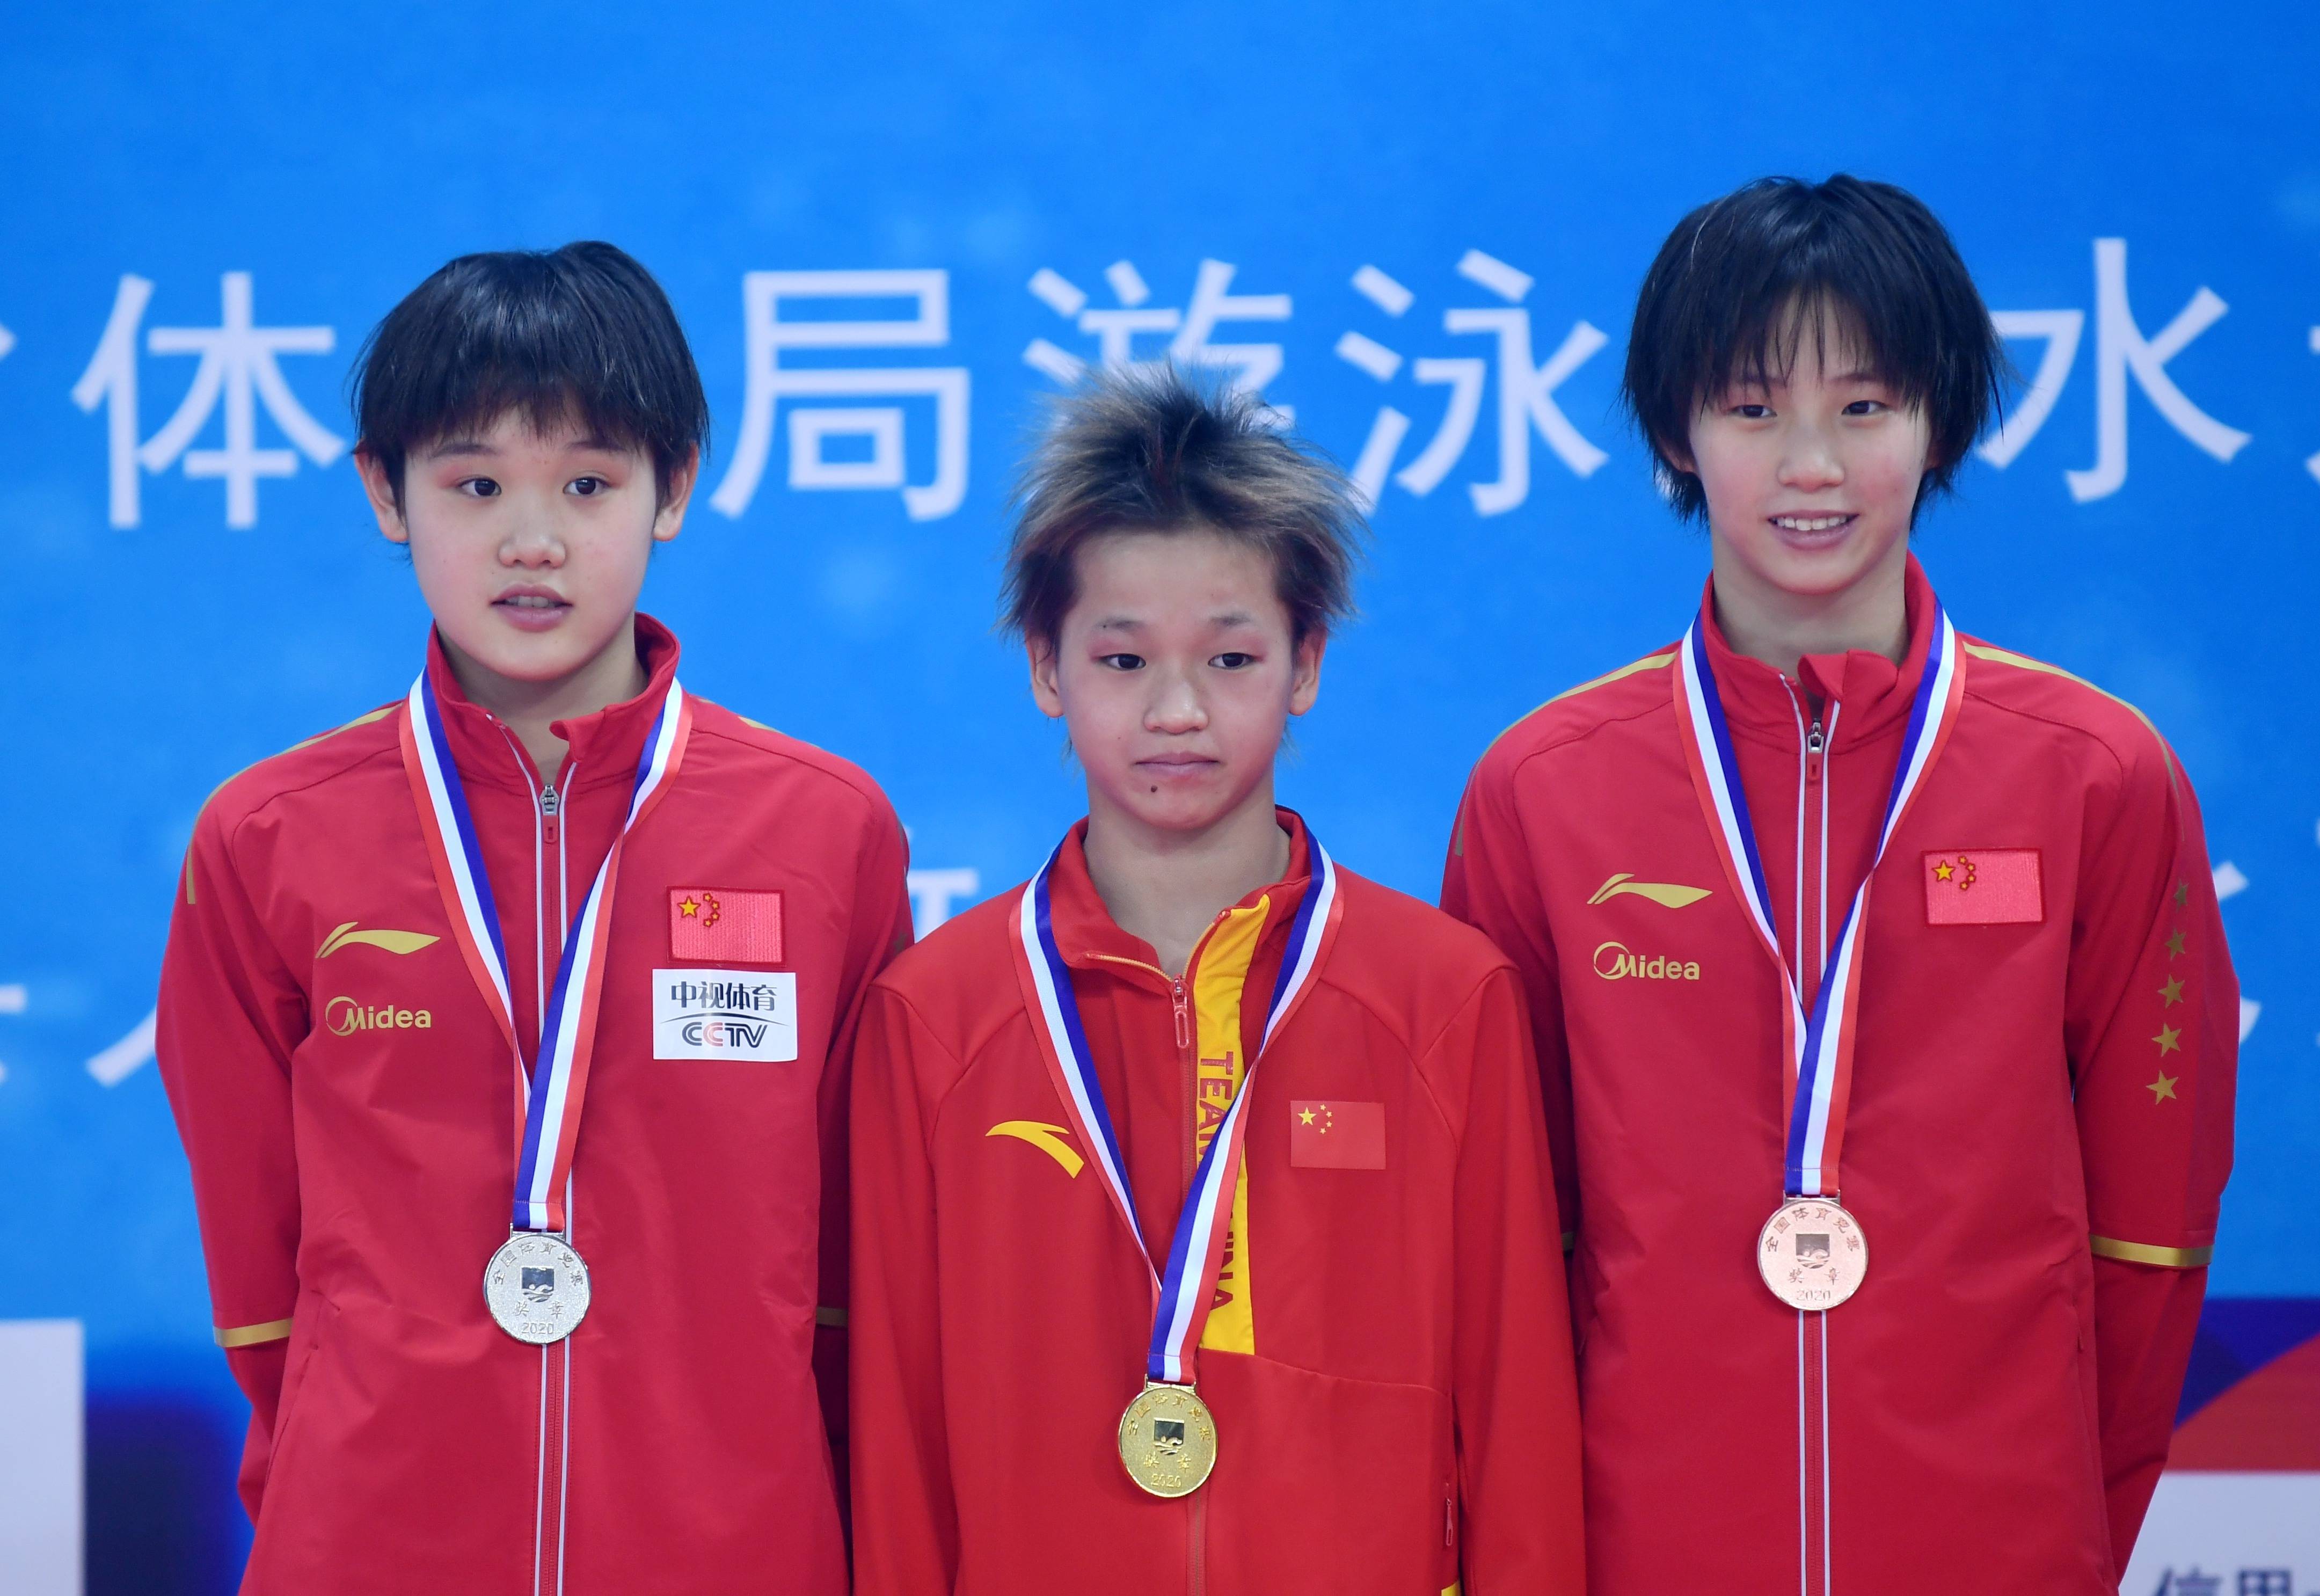 当日,在东京奥运会跳水项目女子10米跳台决赛中,中国选手全红婵夺得